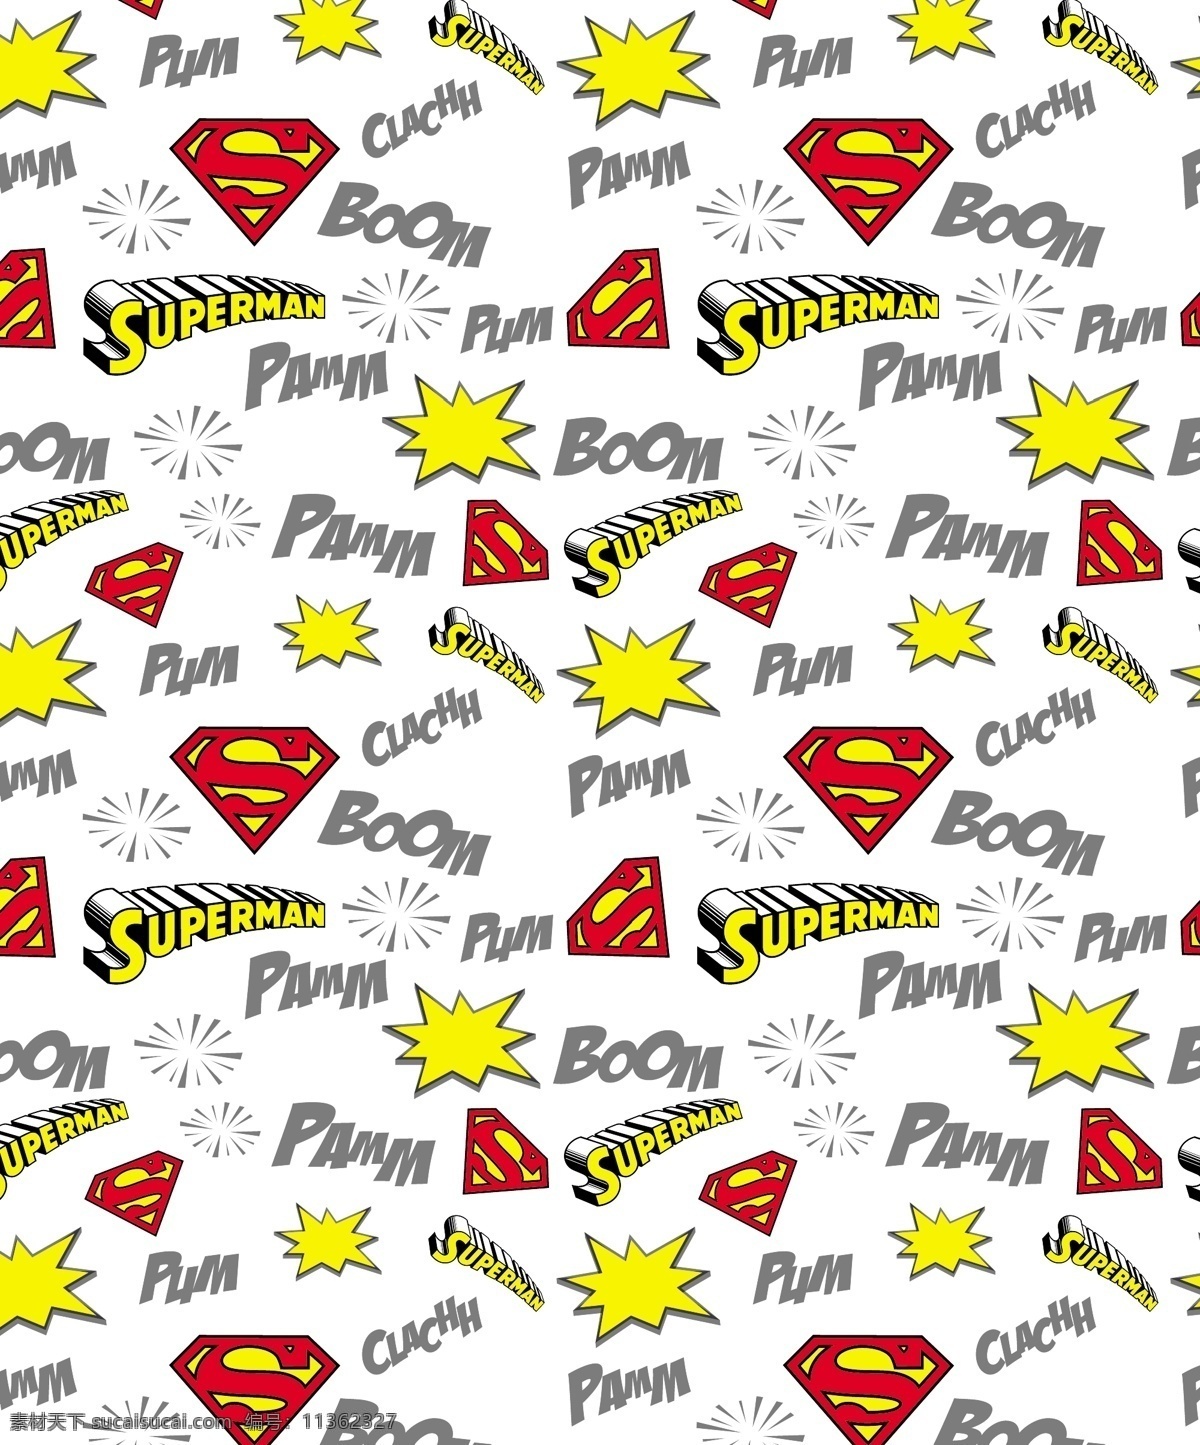 flash superman 蝙蝠侠 标志 超人 服装印花 卡通形象 其他人物 batman 闪电侠 华纳 dc漫画 超级英雄 英雄联盟 矢量人物 矢量 其他设计 网页素材